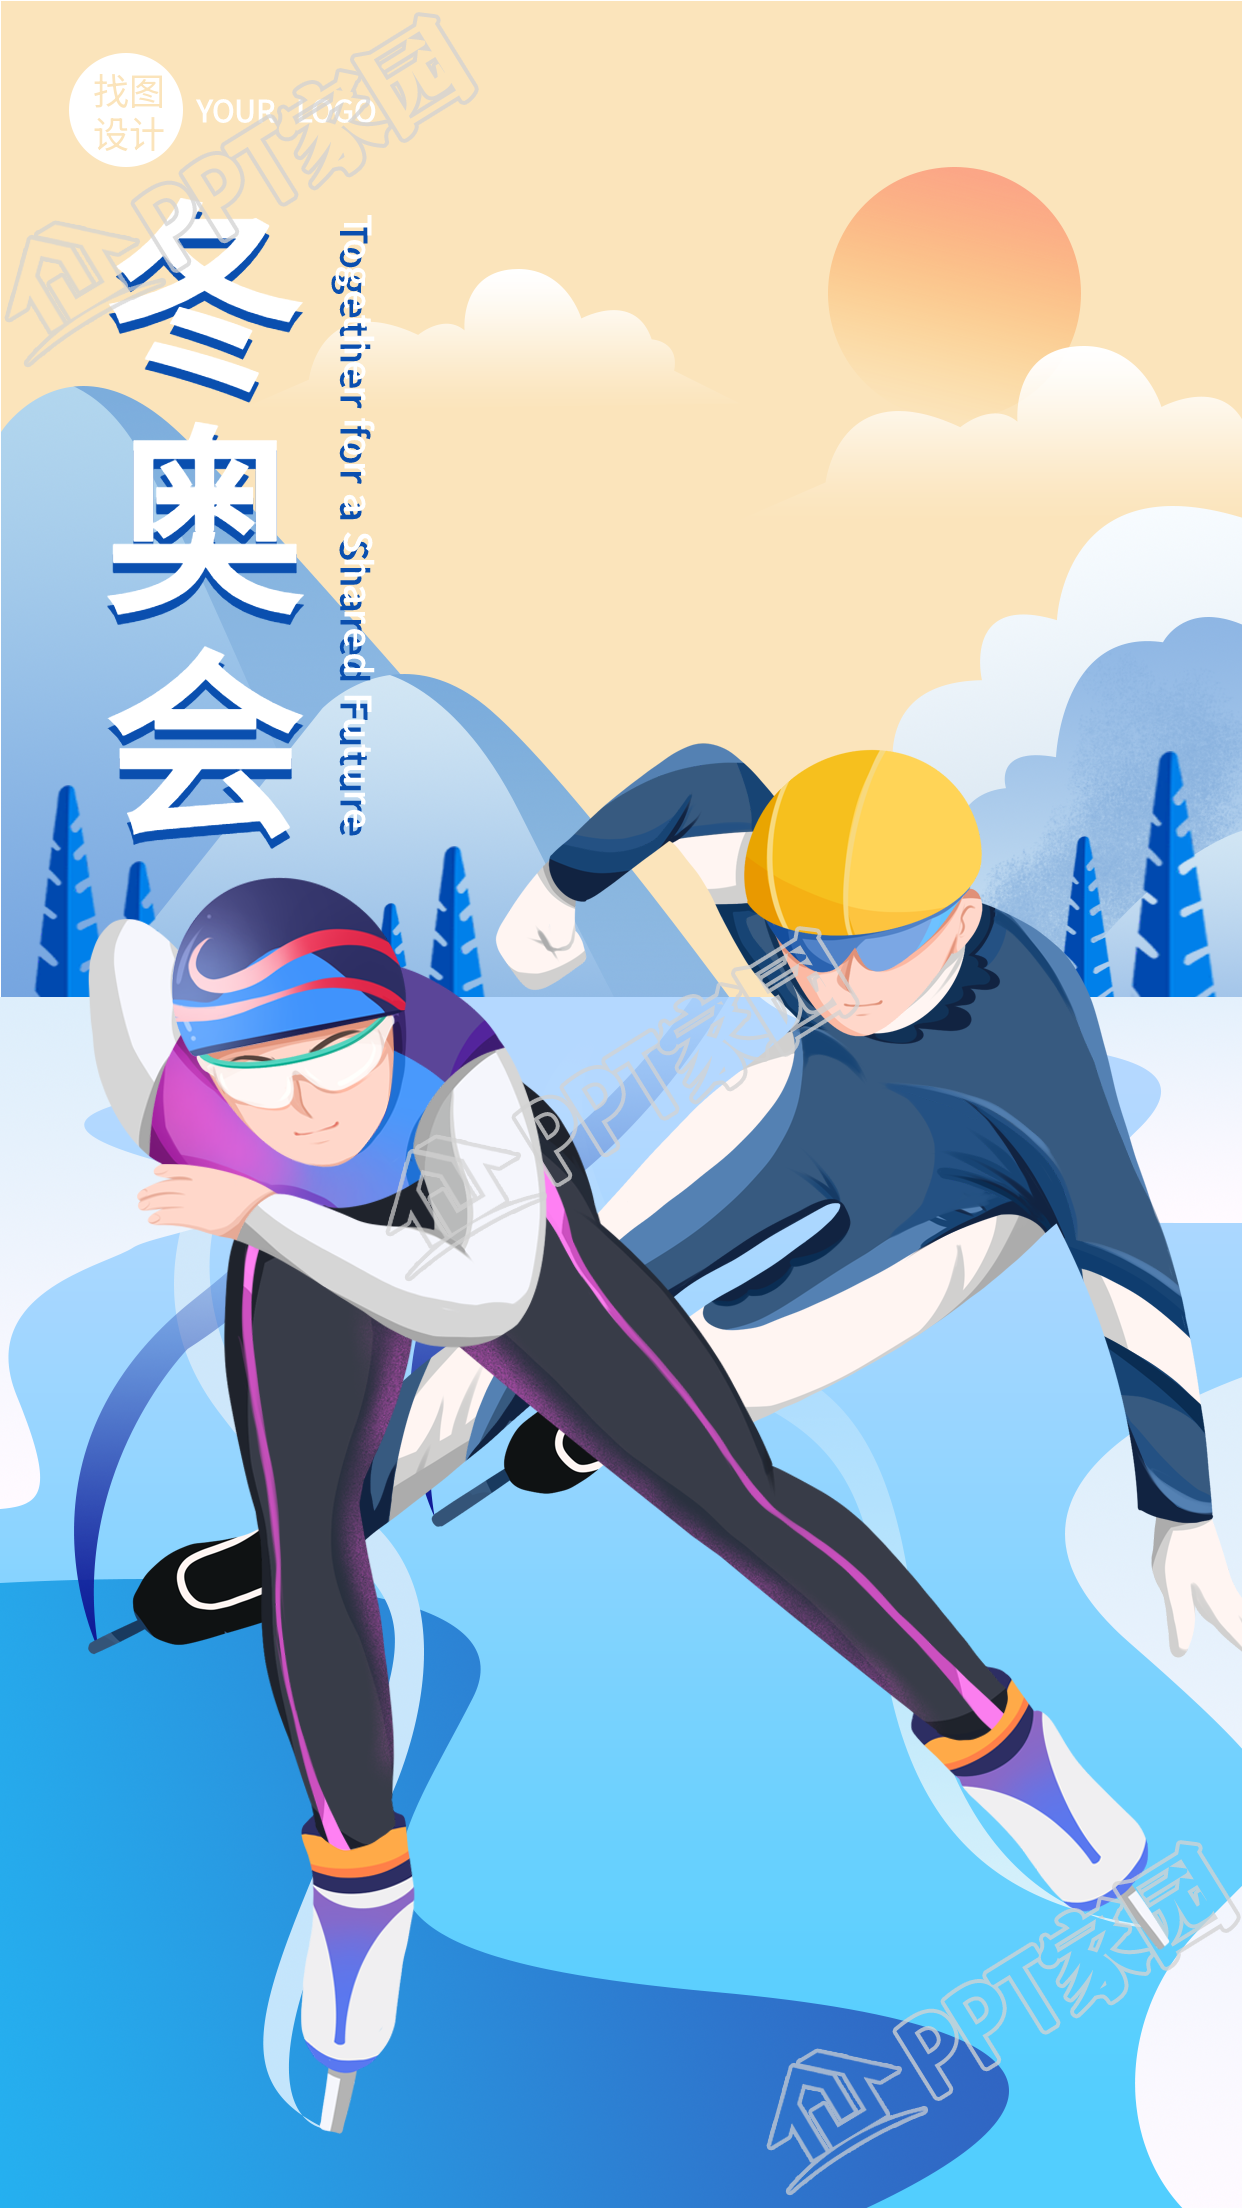 冬奥会短道速滑运动竞技比赛手机海报